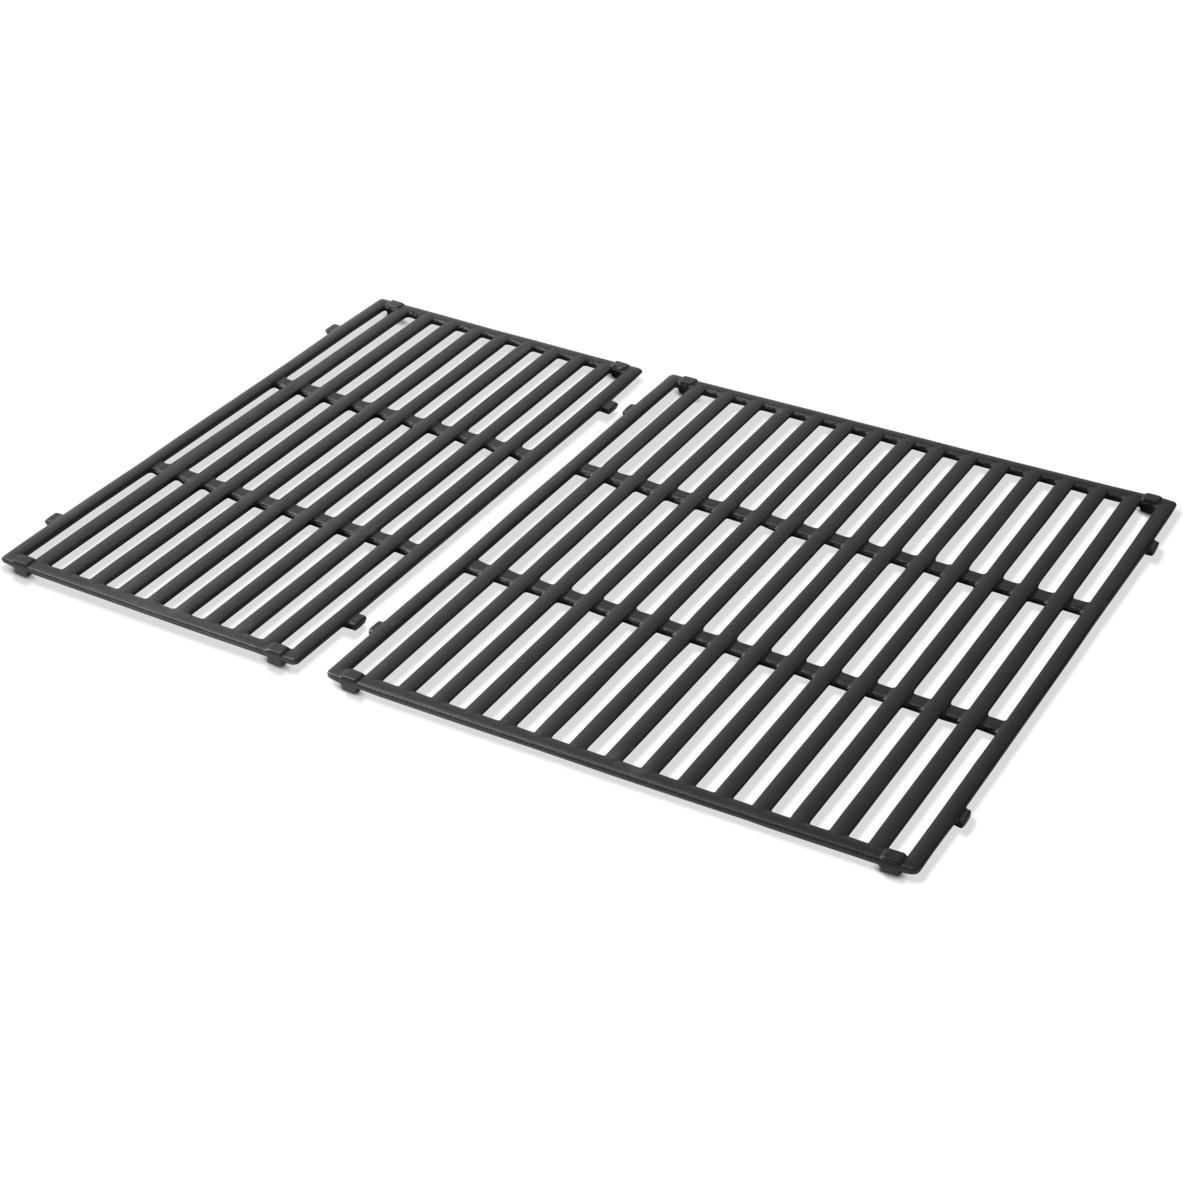 Фарфоровая эмалированная чугунная решетка Weber Crafted для гриля Genesis Series 300 черная (7853) фото 1